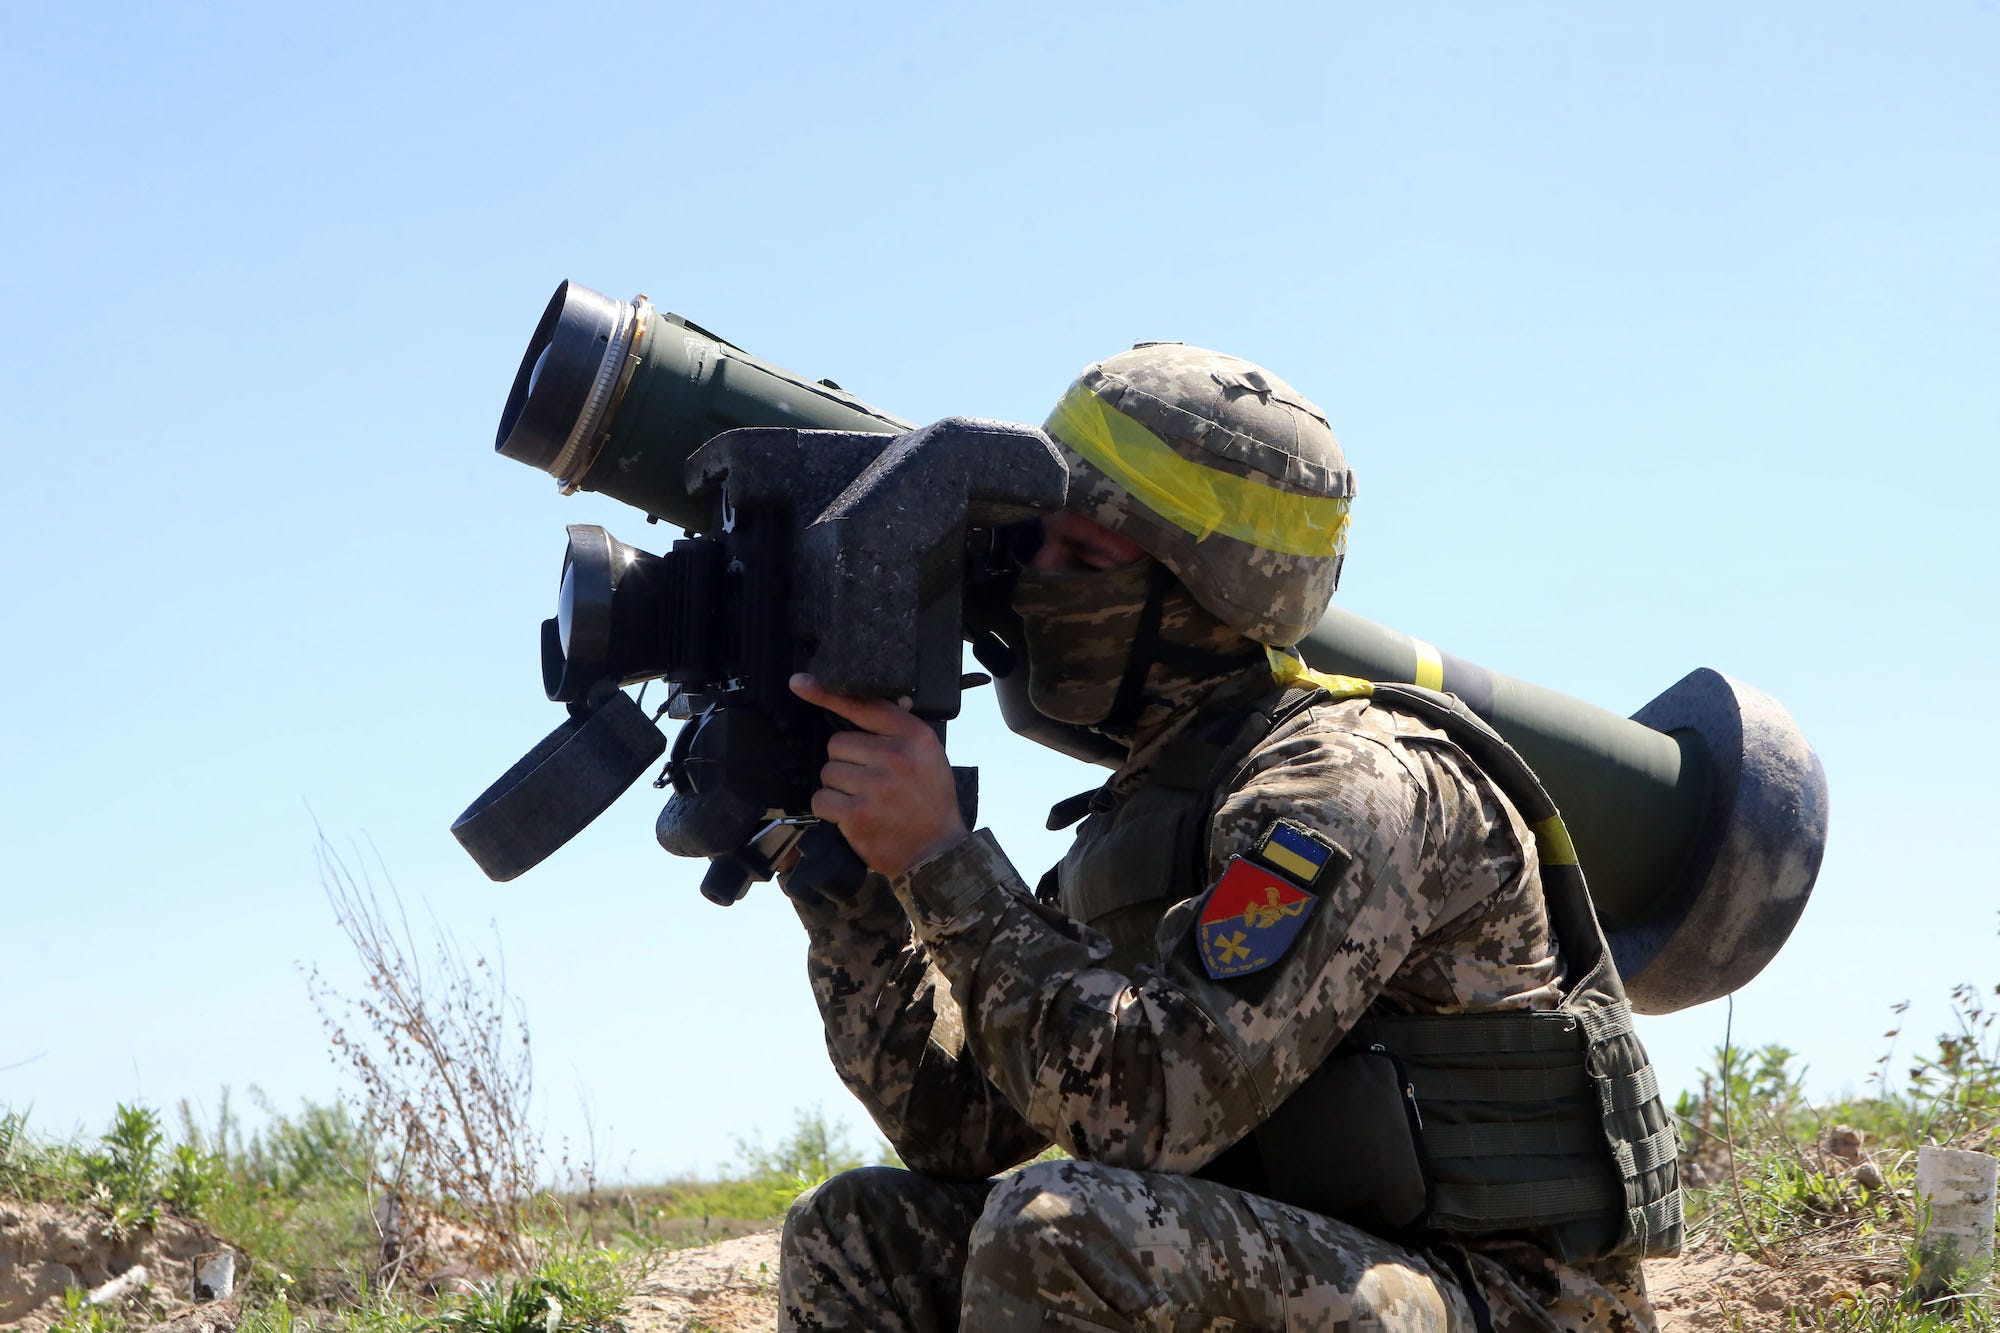 Ukraine military Javelin anti-tank missile